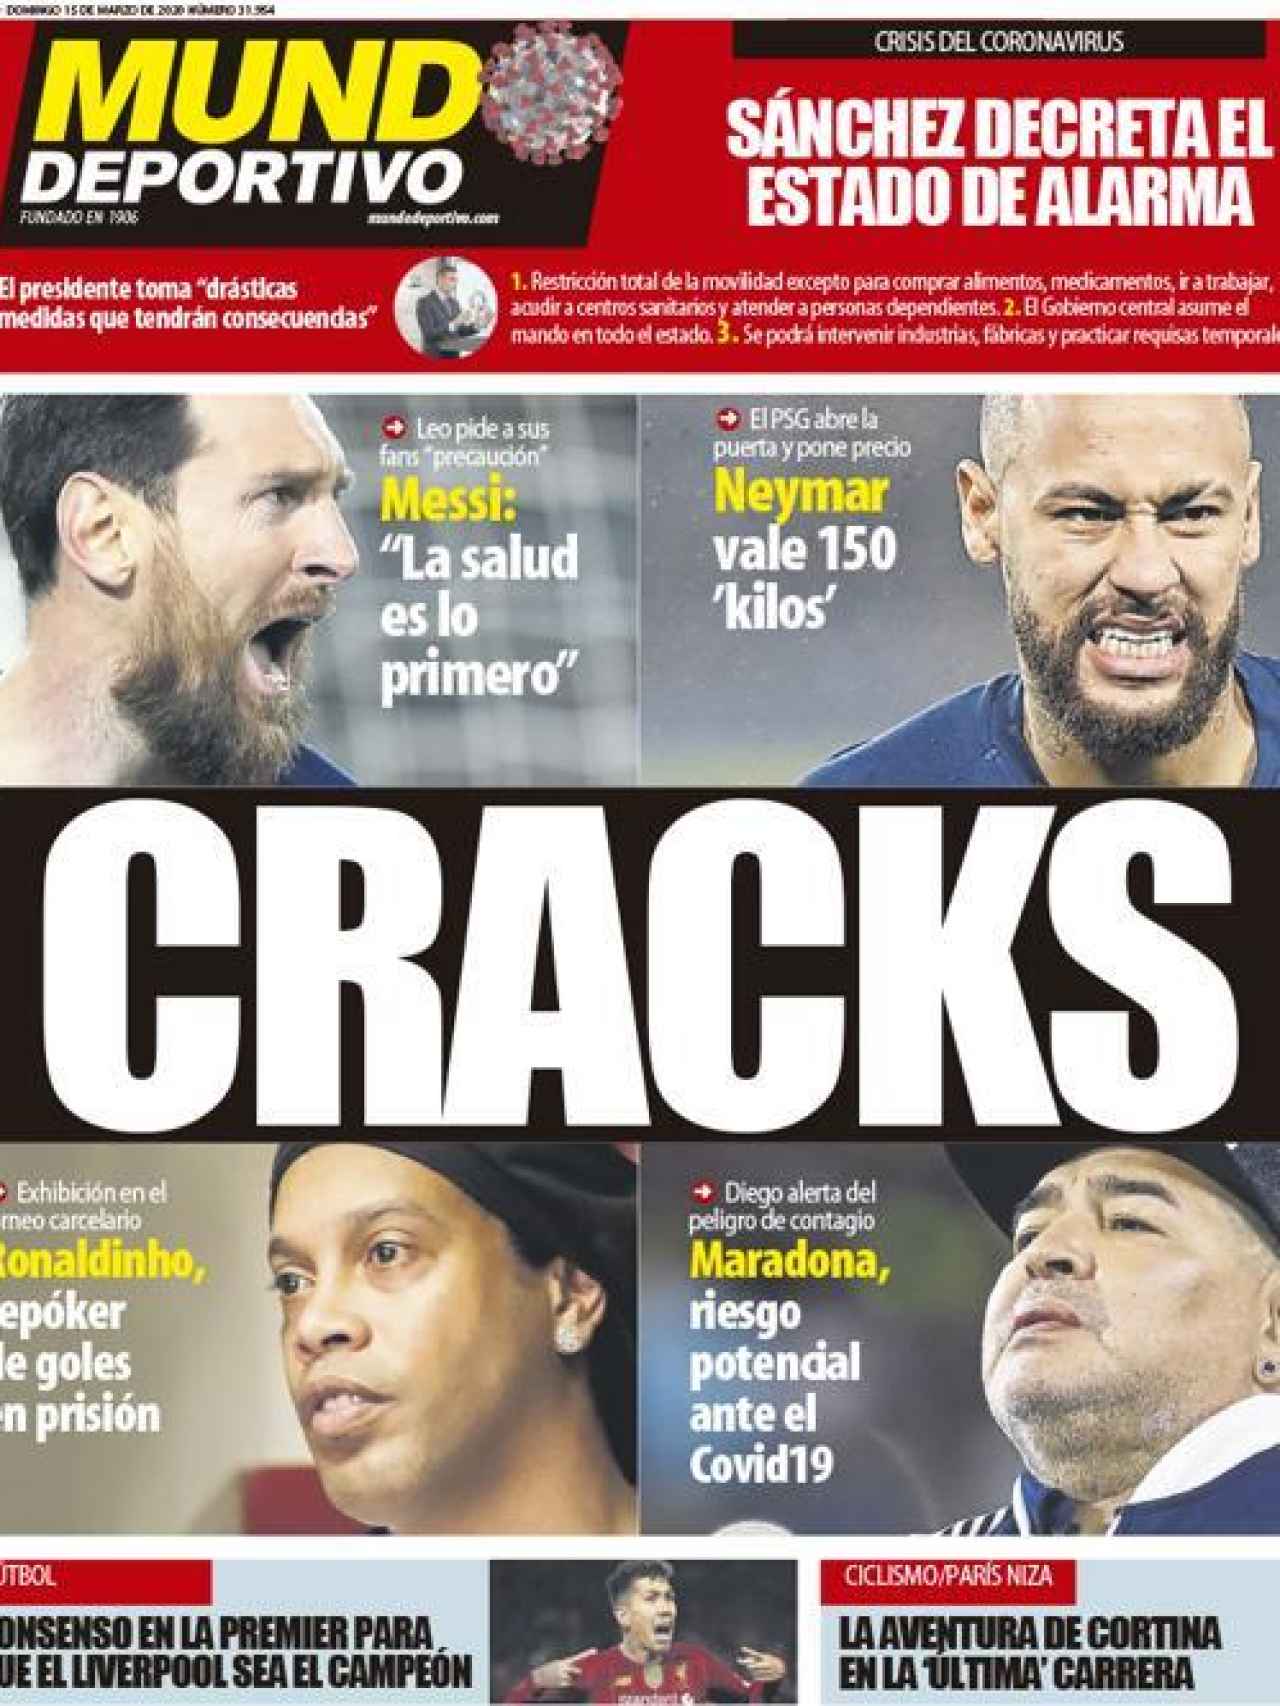 La portada del diario Mundo Deportivo (15/03/2020)